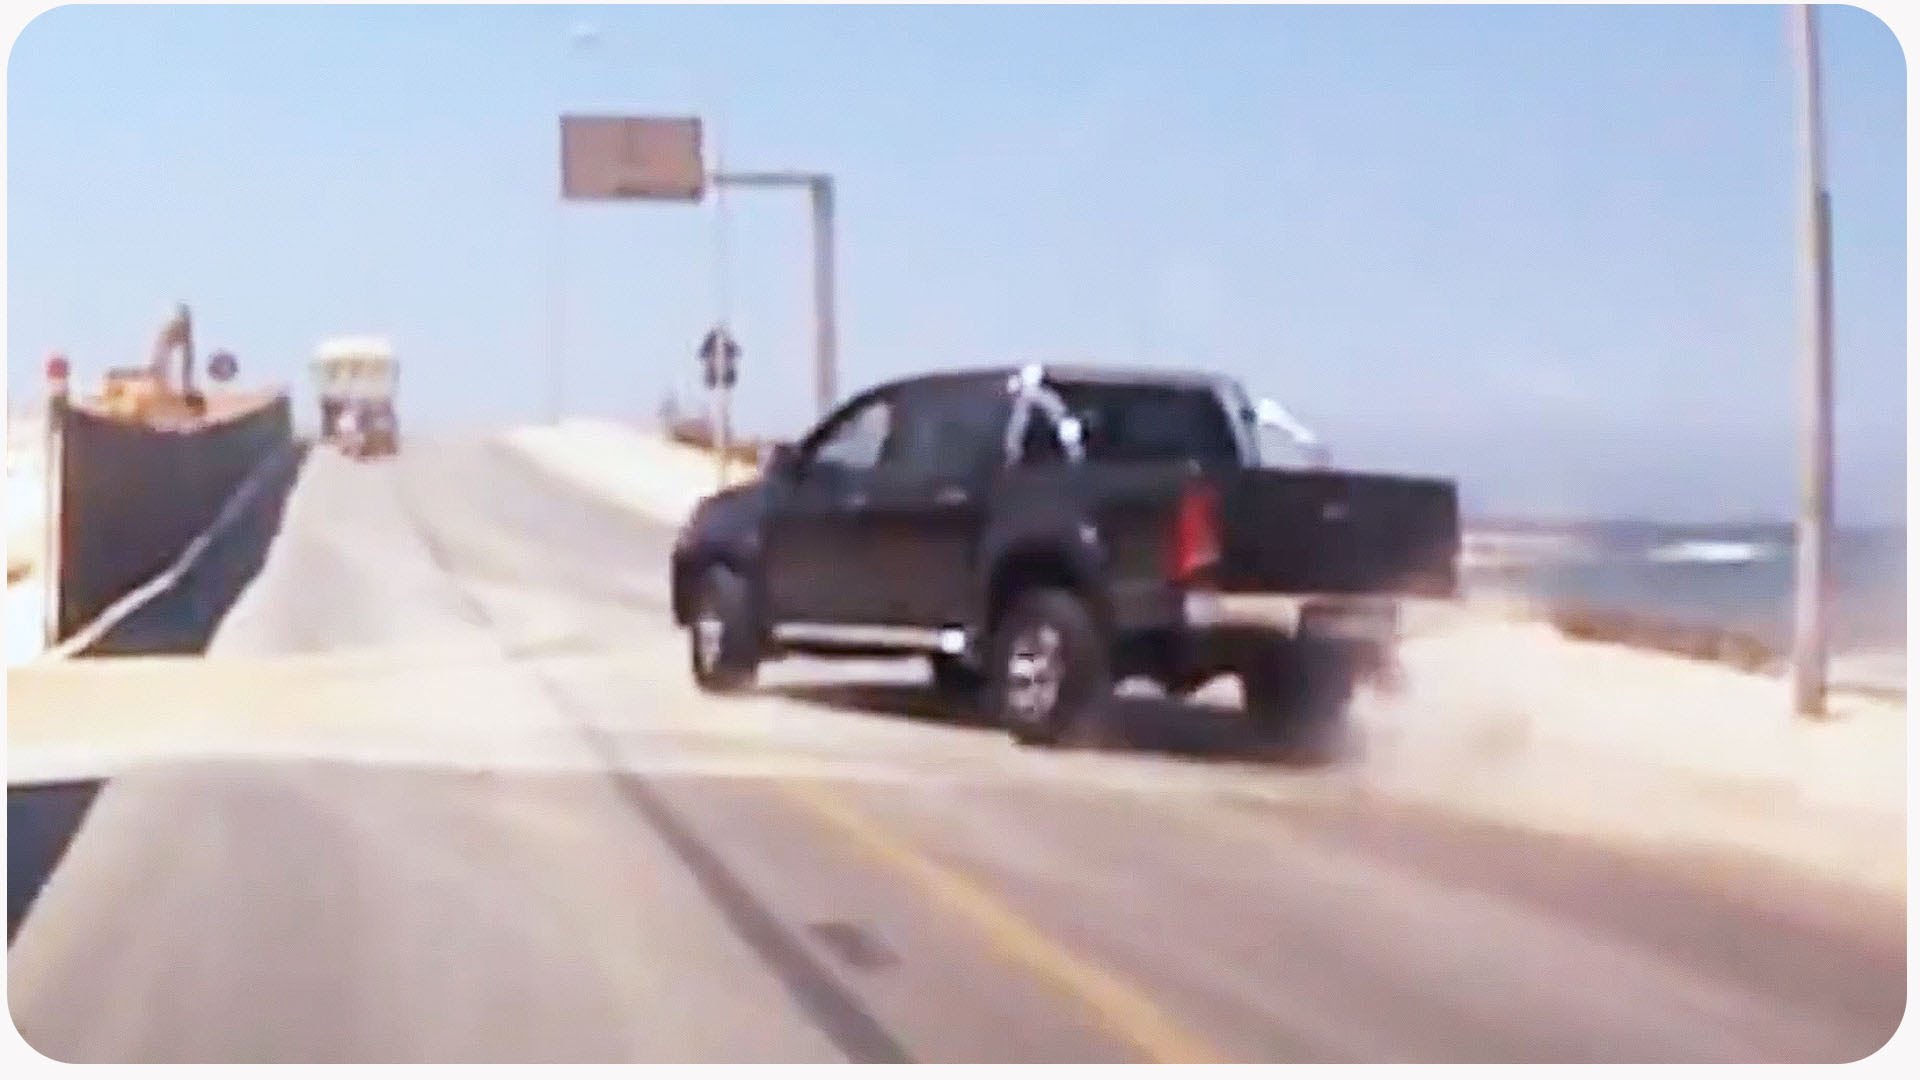 Speeding Truck CRASHES Through Barrier - YouTube